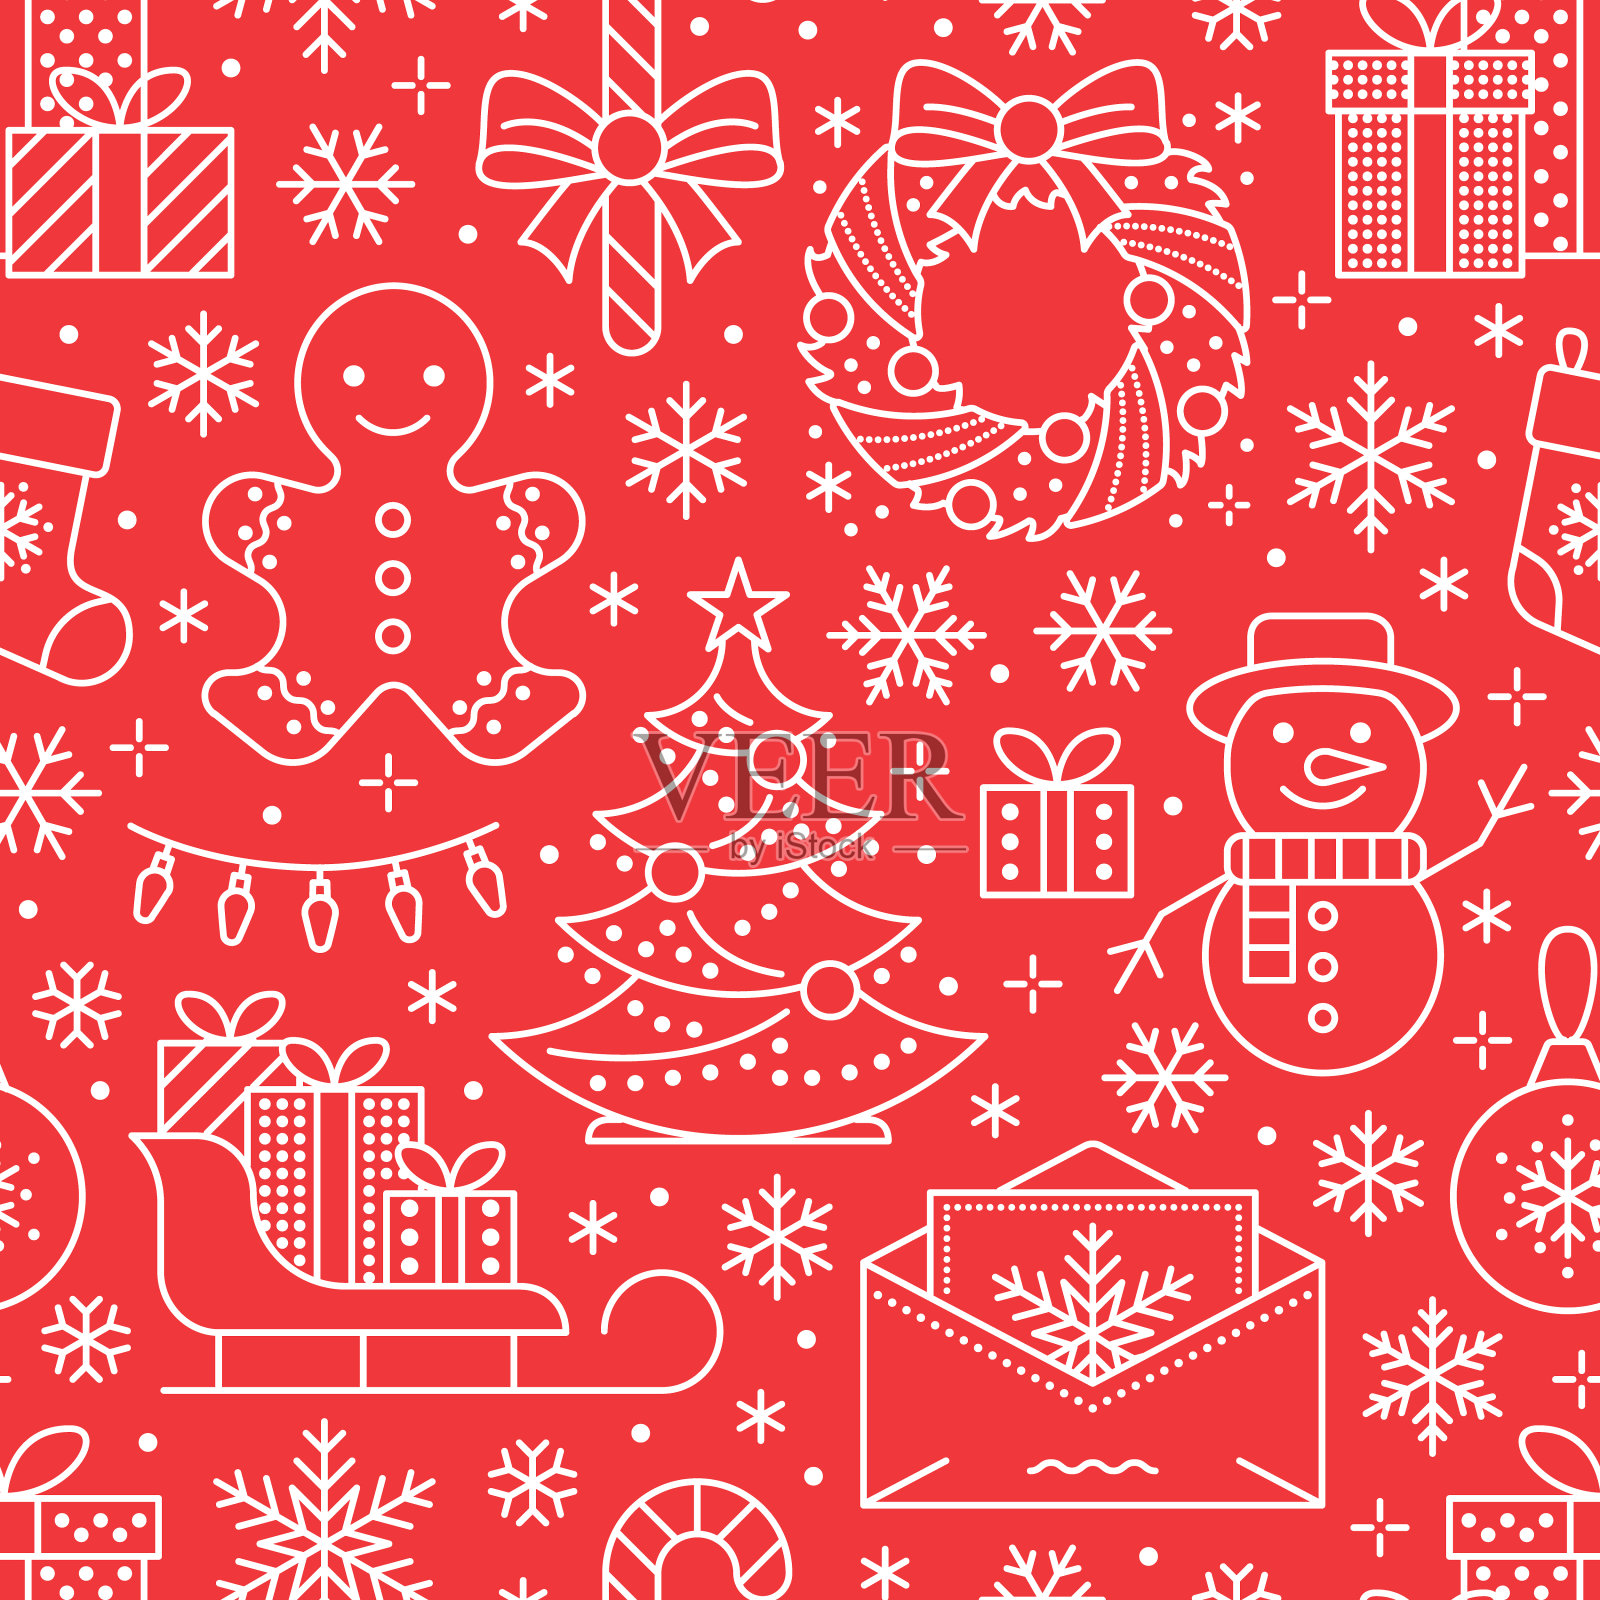 圣诞、新年无缝图案、线条插画。矢量图标的冬季假期圣诞树，礼物，信给圣诞老人，礼物，雪人。庆祝会红白相间的背景插画图片素材